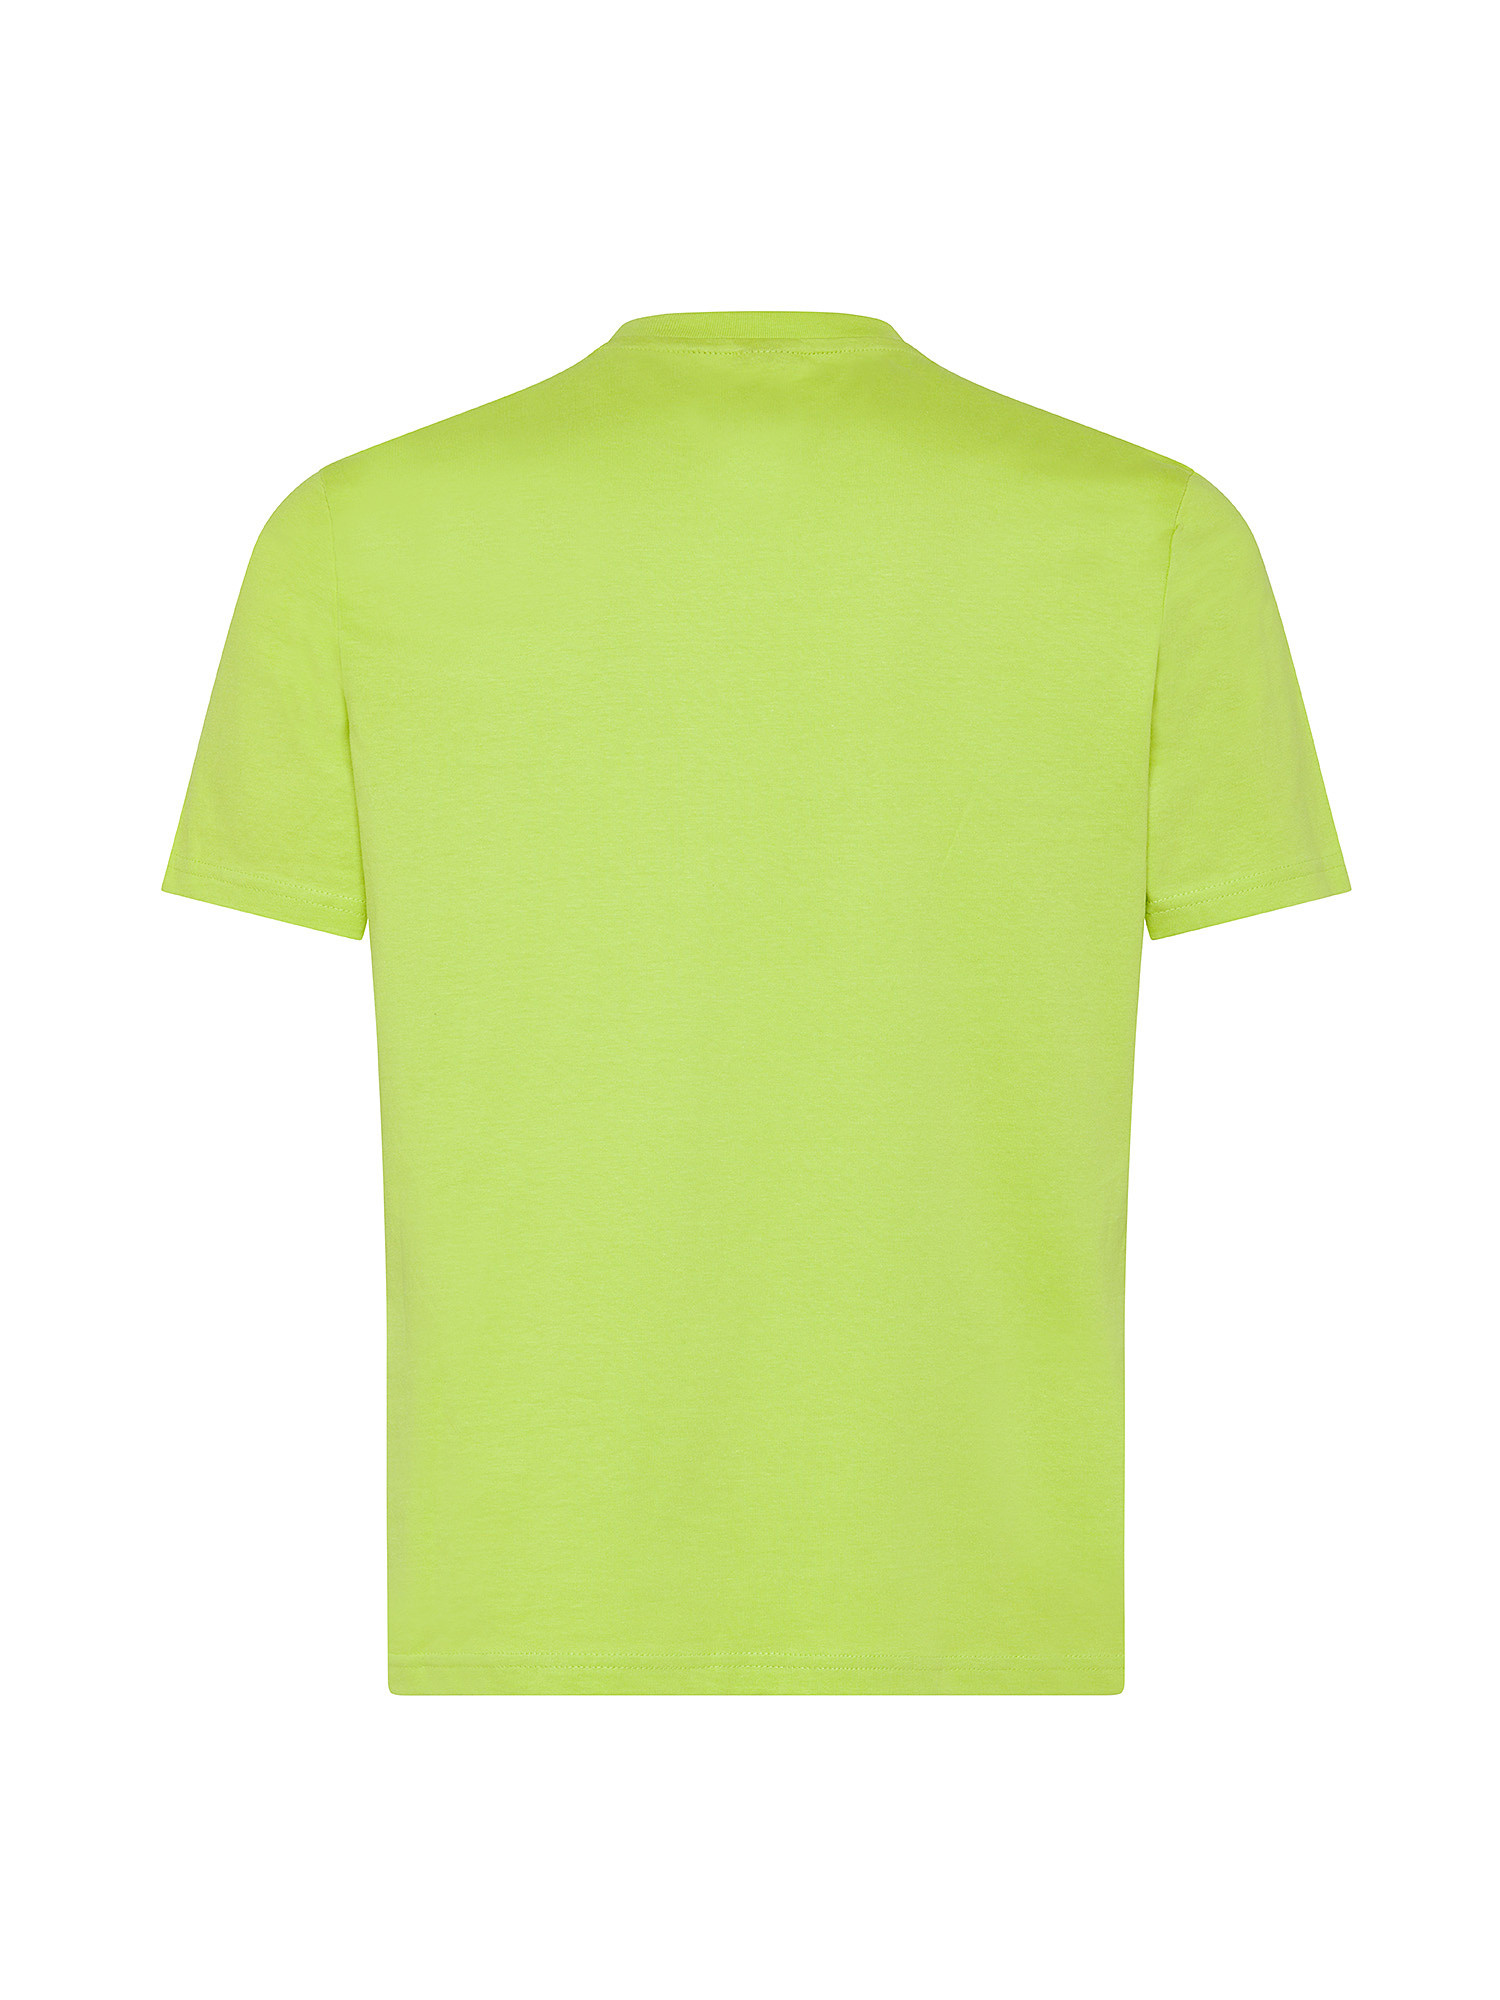 North sails - T-shirt in jersey di cotone organico con maxi logo stampato, Verde chiaro, large image number 1